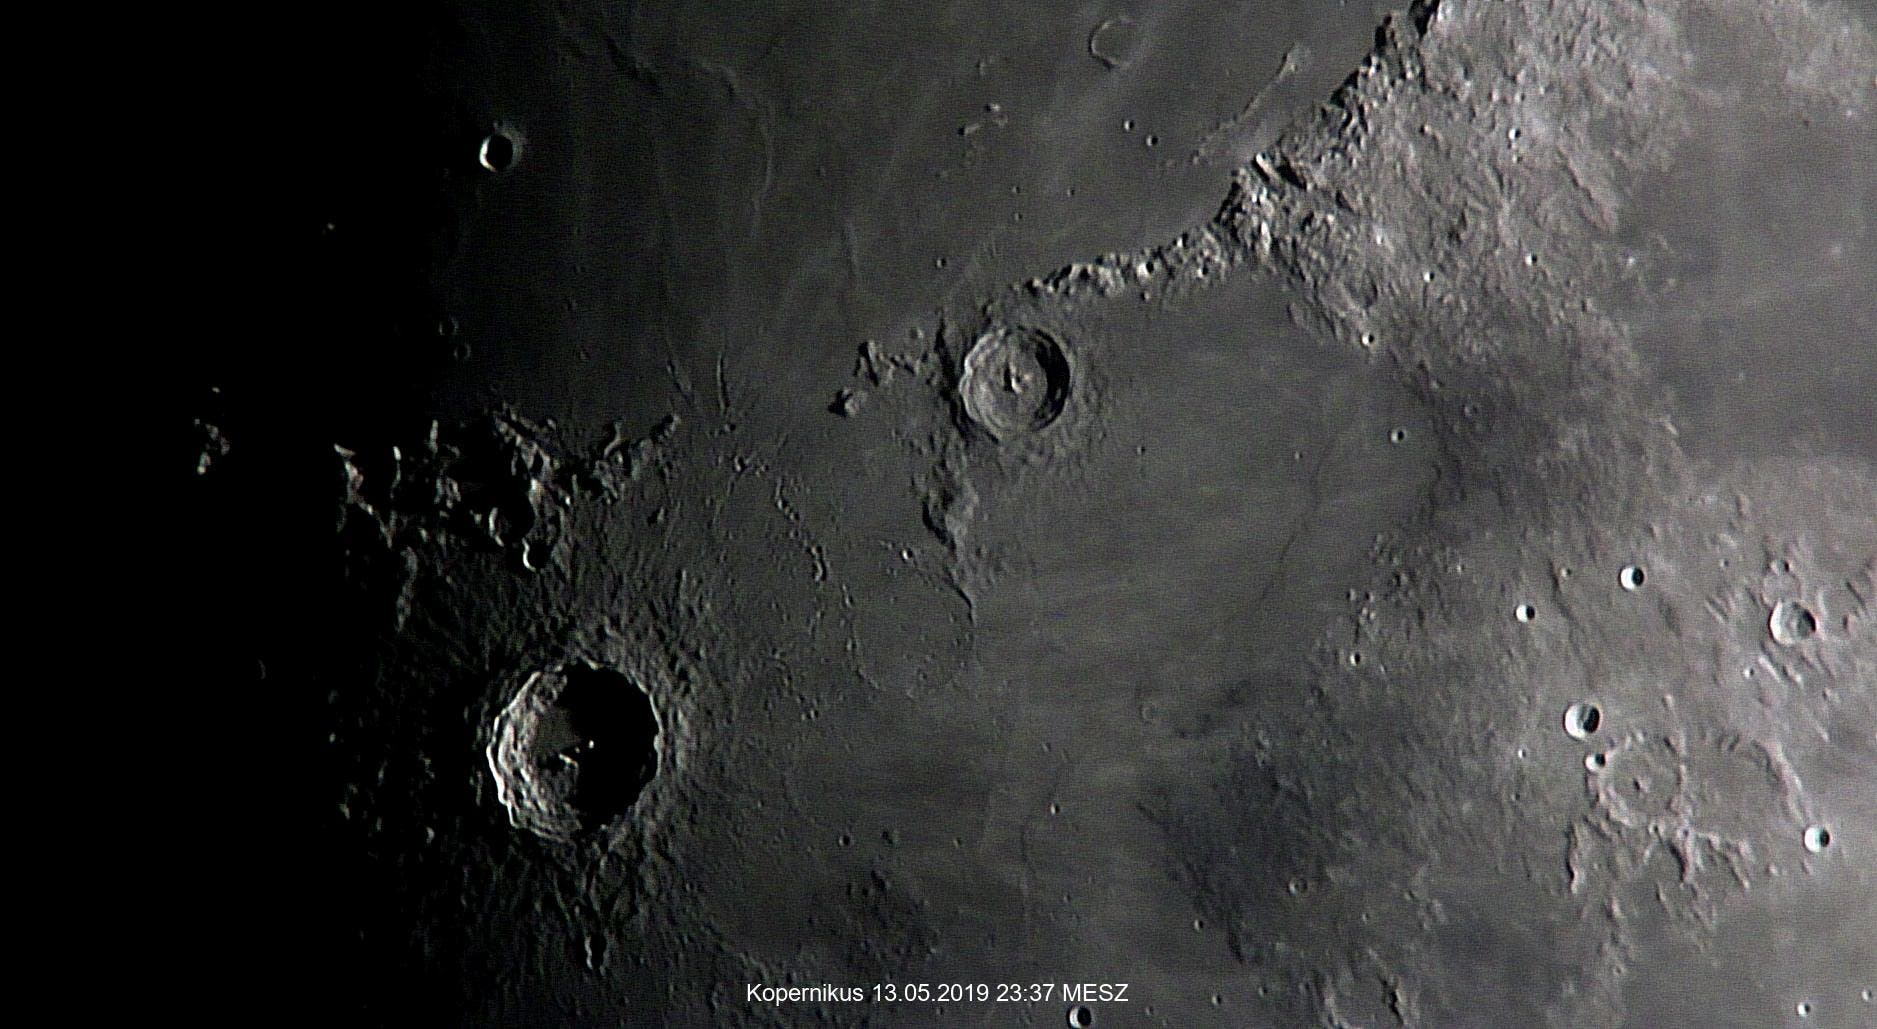 Kopernikus, Stadius und Eratosthenes am 13. Mai 2019